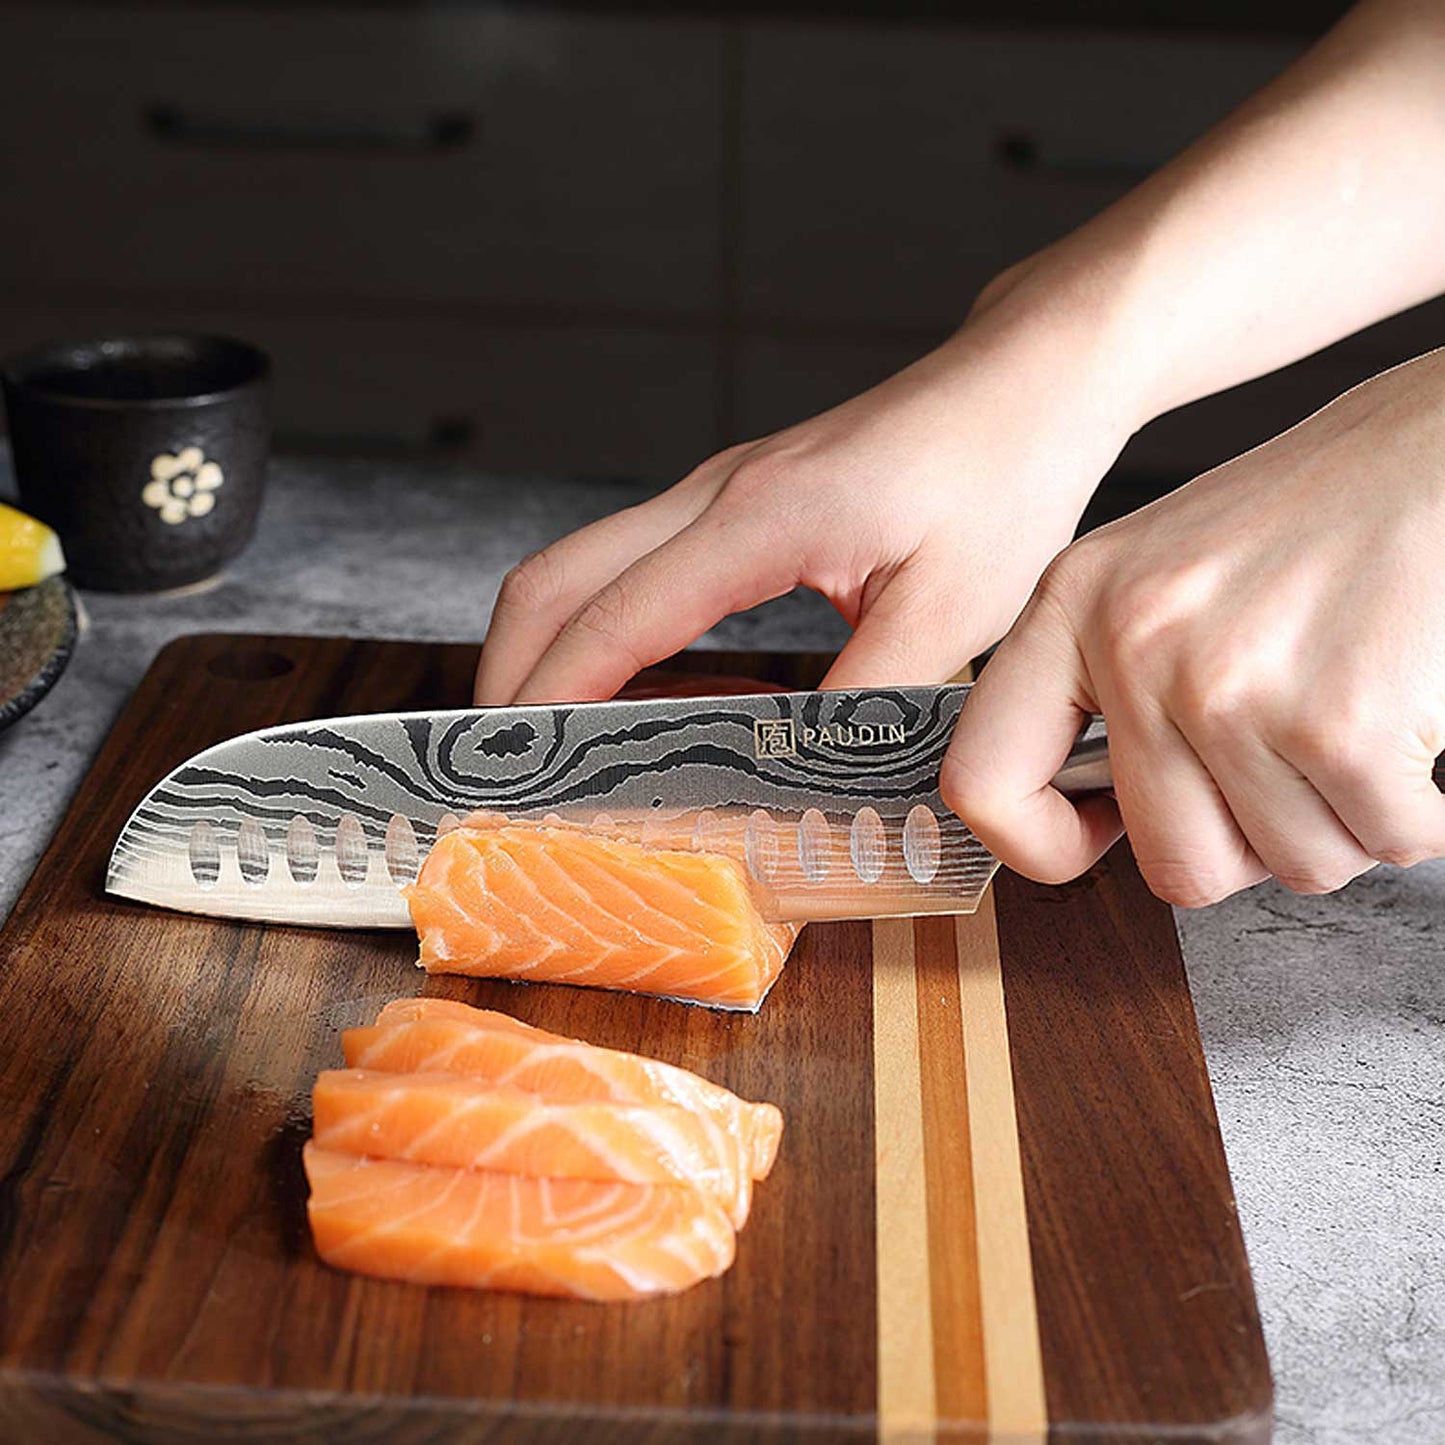 Ya sea que estés preparando jugosos filetes, chuletas o cualquier otro corte de carne, este cuchillo te brindará la precisión necesaria para obtener resultados deliciosos.